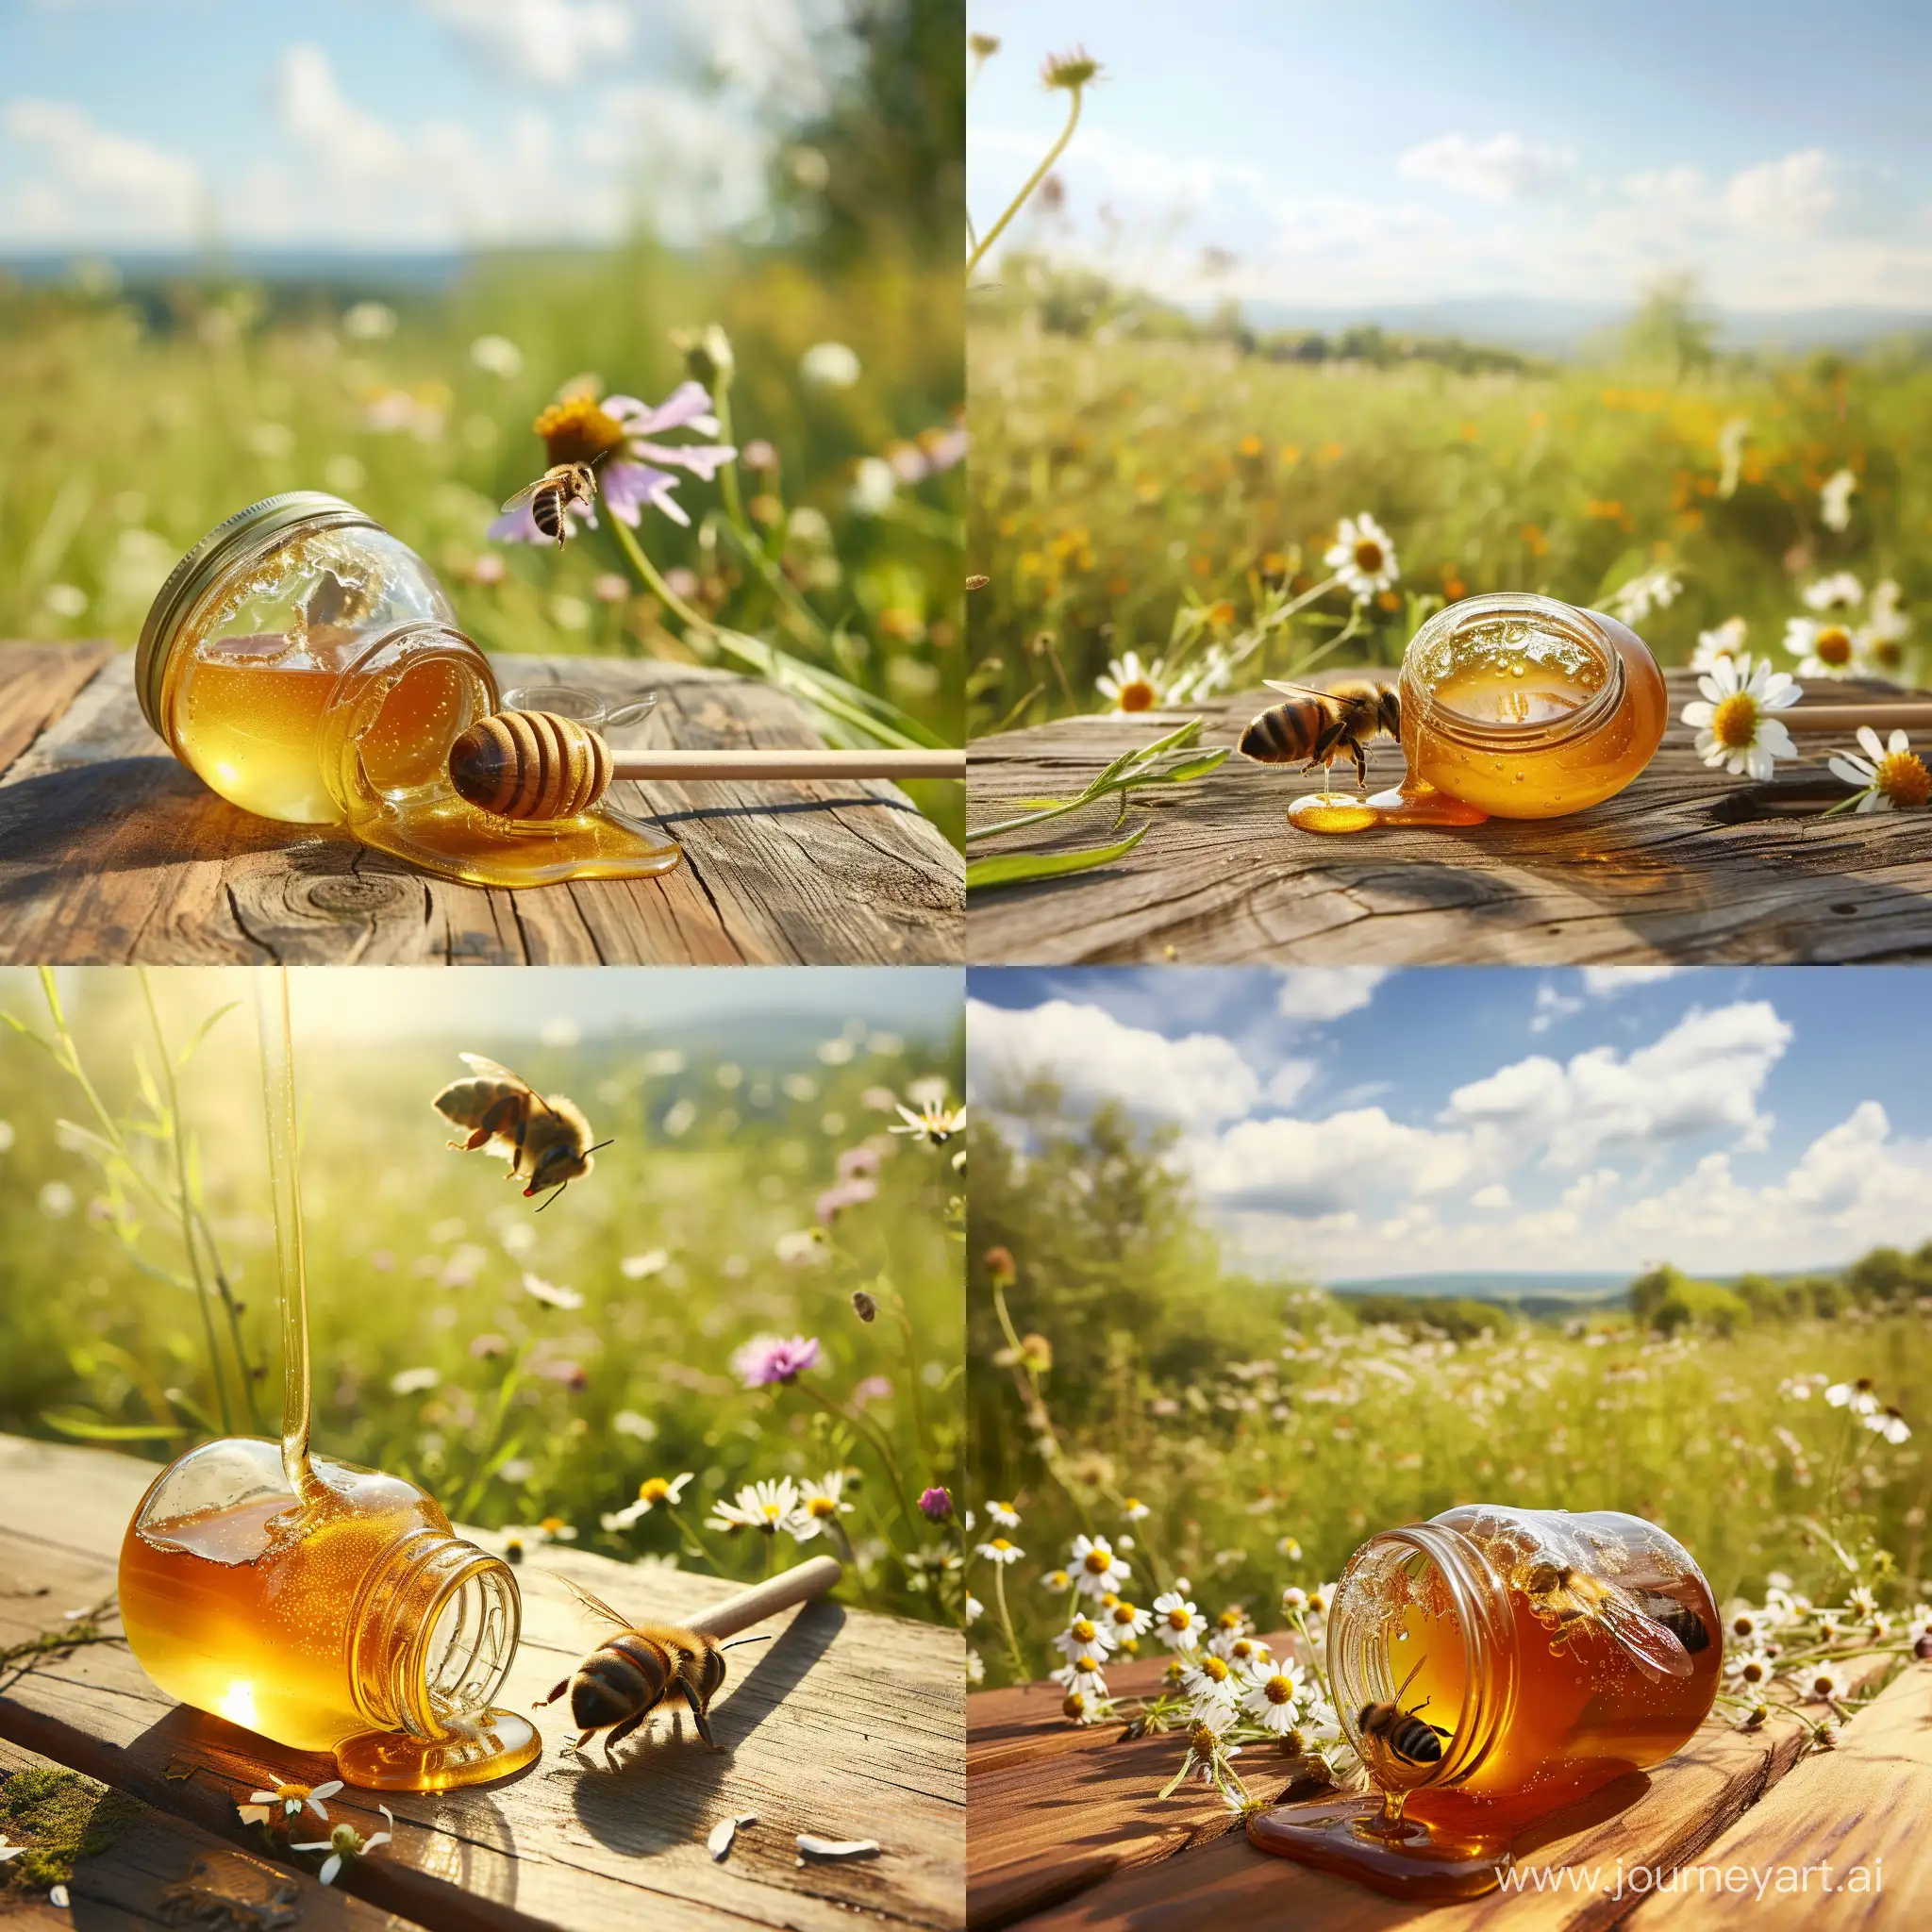 Honeybee-Gathering-Honey-from-Toppled-Jar-in-Blooming-Meadow